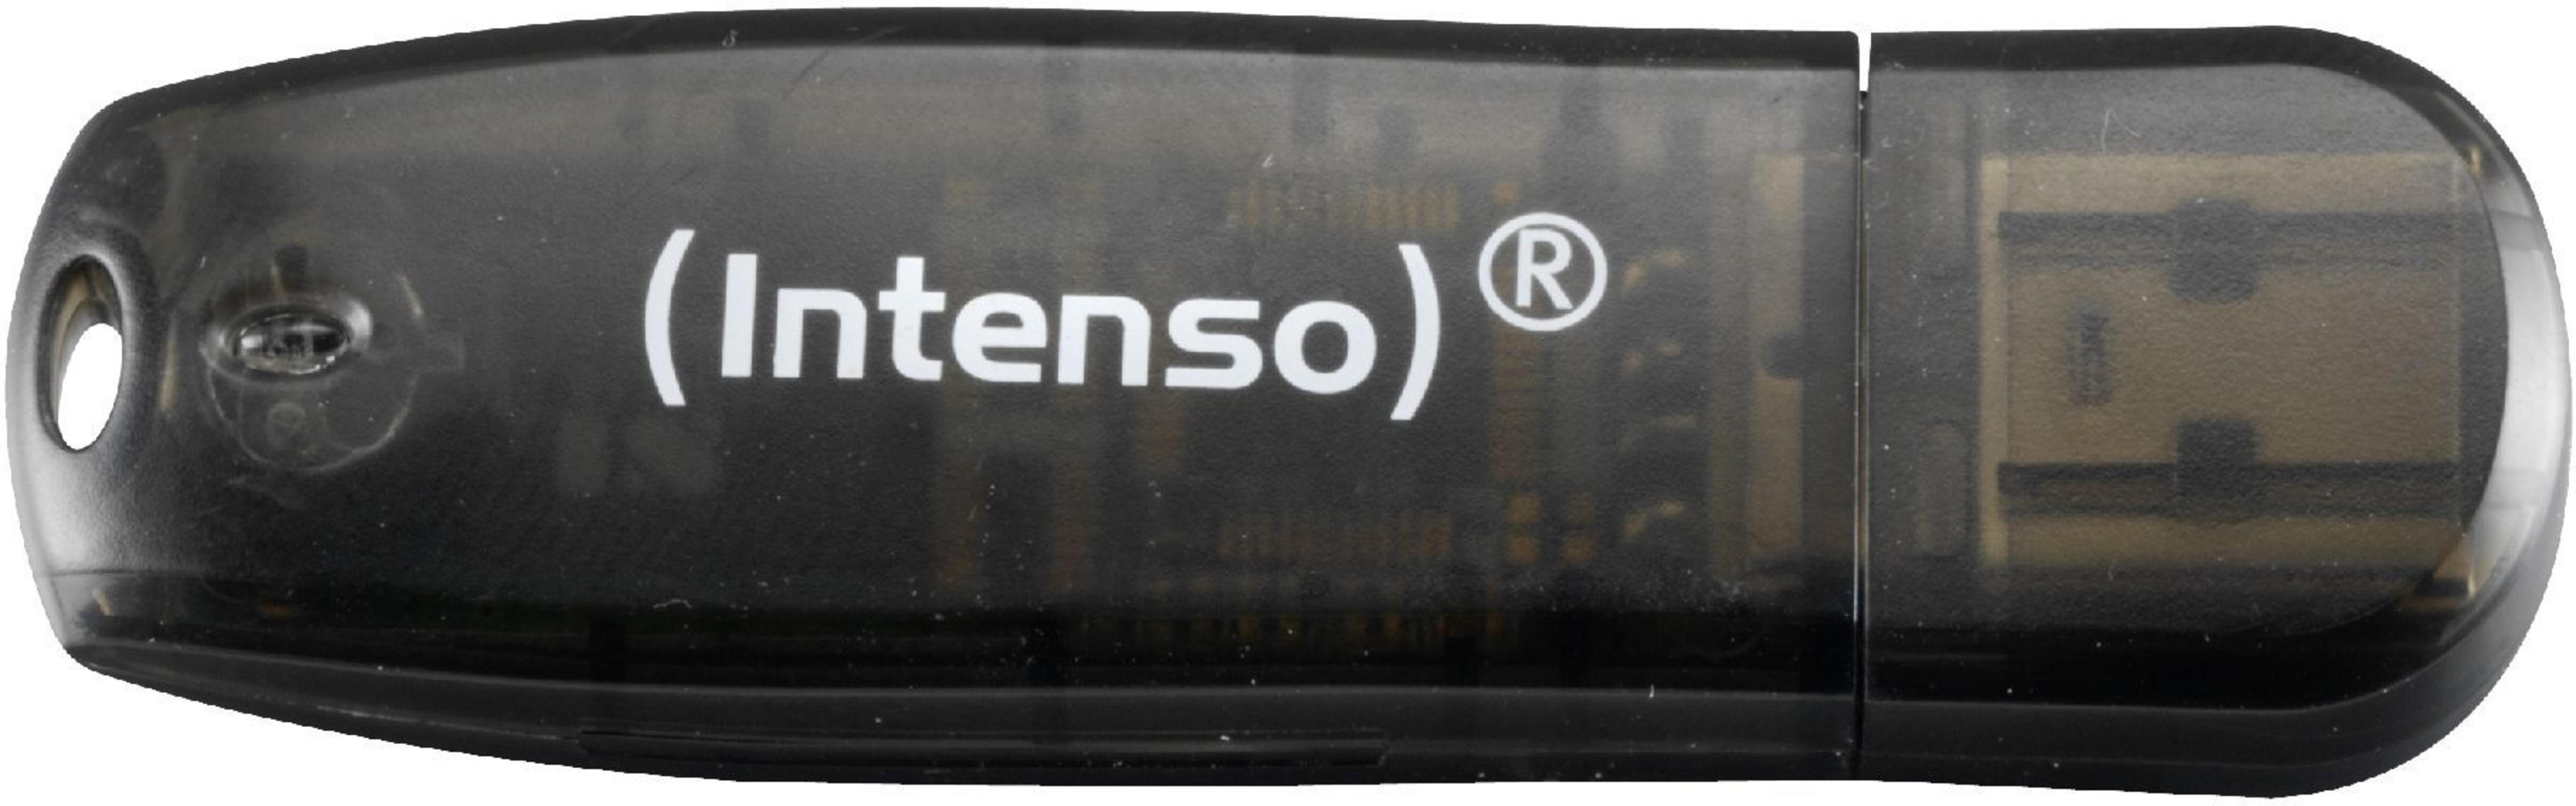 INTENSO 3502470 16GB RAINBOW (Schwarz, USB-Stick 16 SCHWARZ GB)